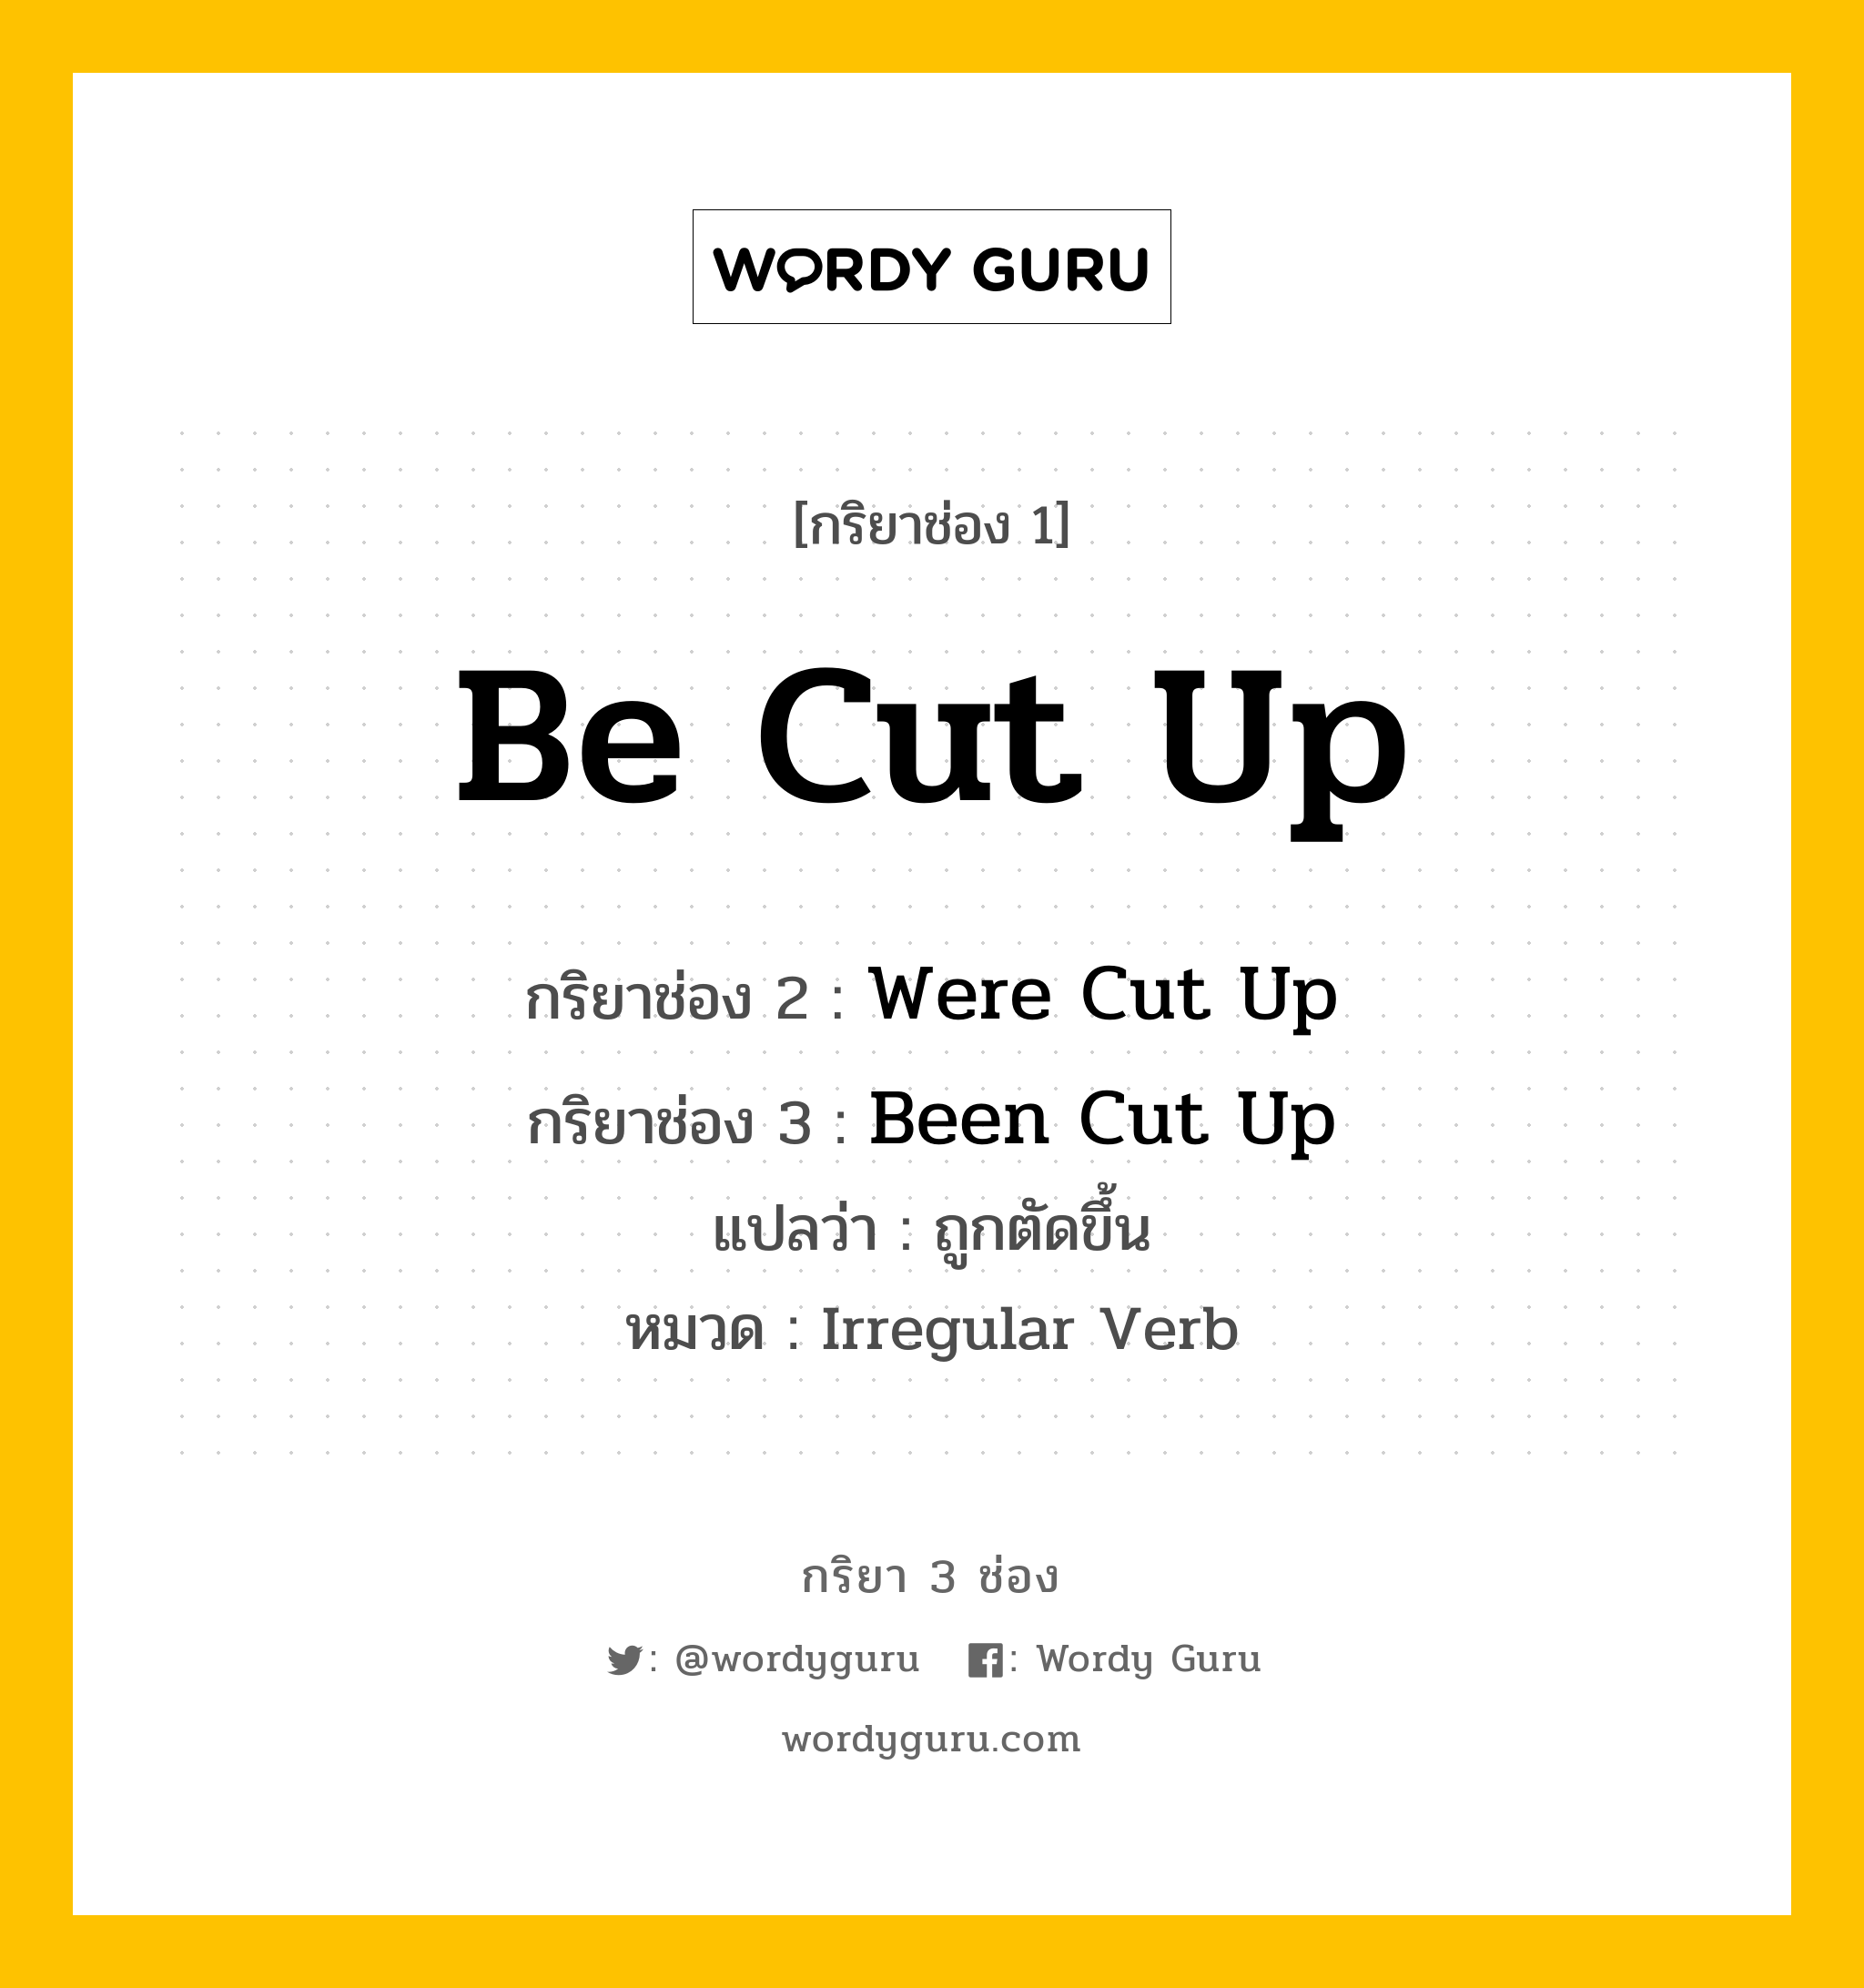 กริยา 3 ช่อง ของ Be Cut Up คืออะไร?, กริยาช่อง 1 Be Cut Up กริยาช่อง 2 Were Cut Up กริยาช่อง 3 Been Cut Up แปลว่า ถูกตัดขึ้น หมวด Irregular Verb หมวด Irregular Verb